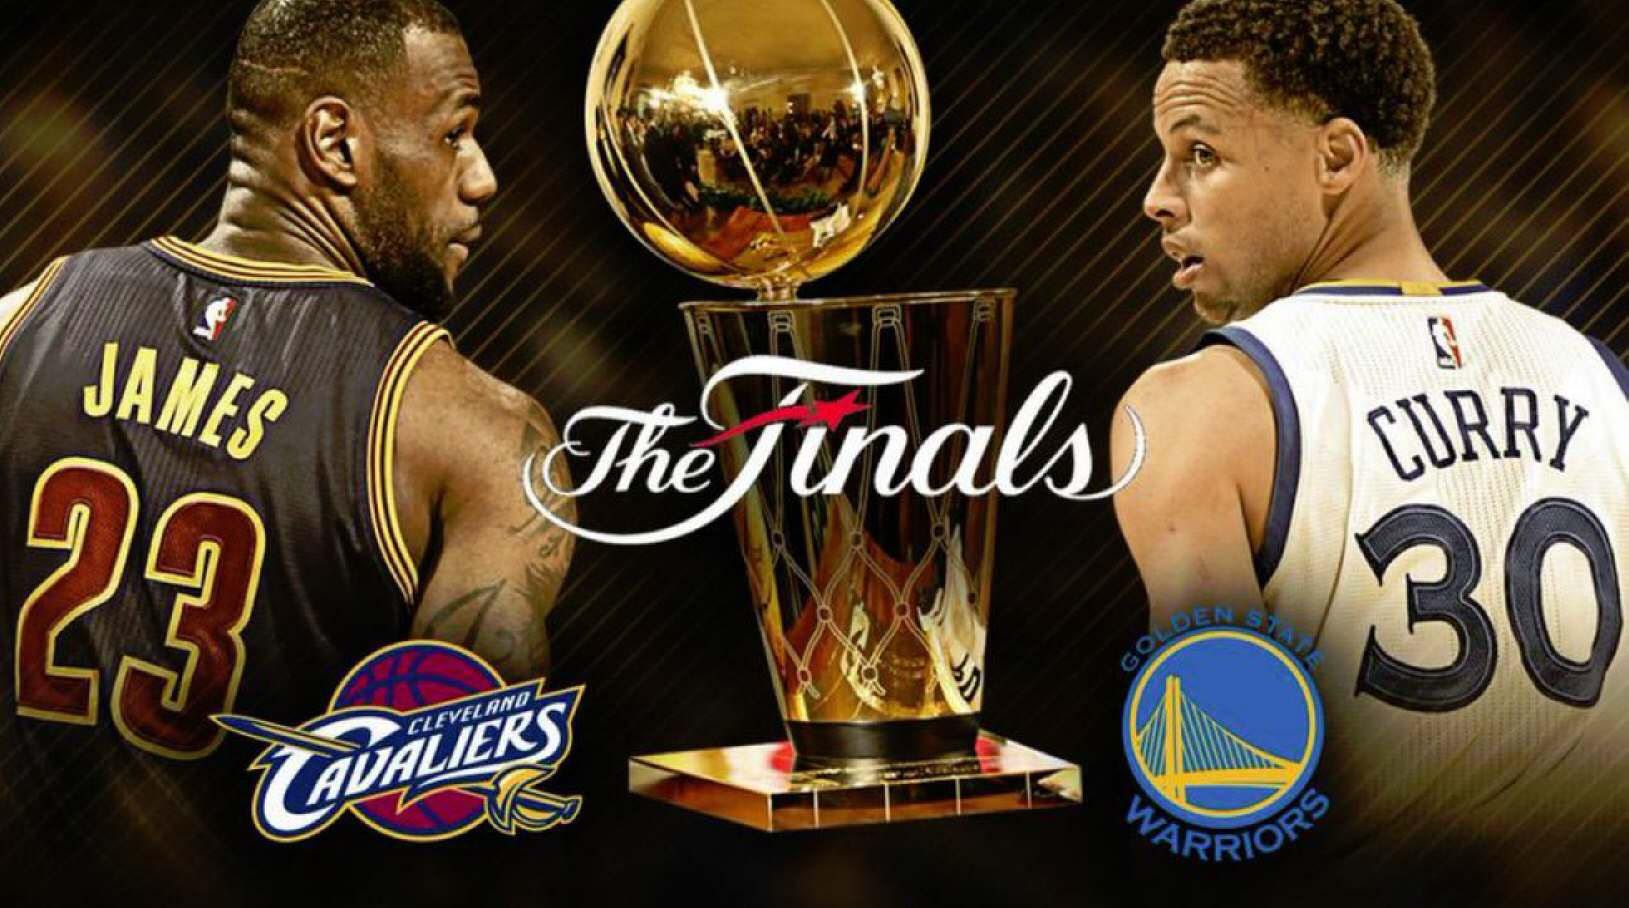 NBA Finals Preview